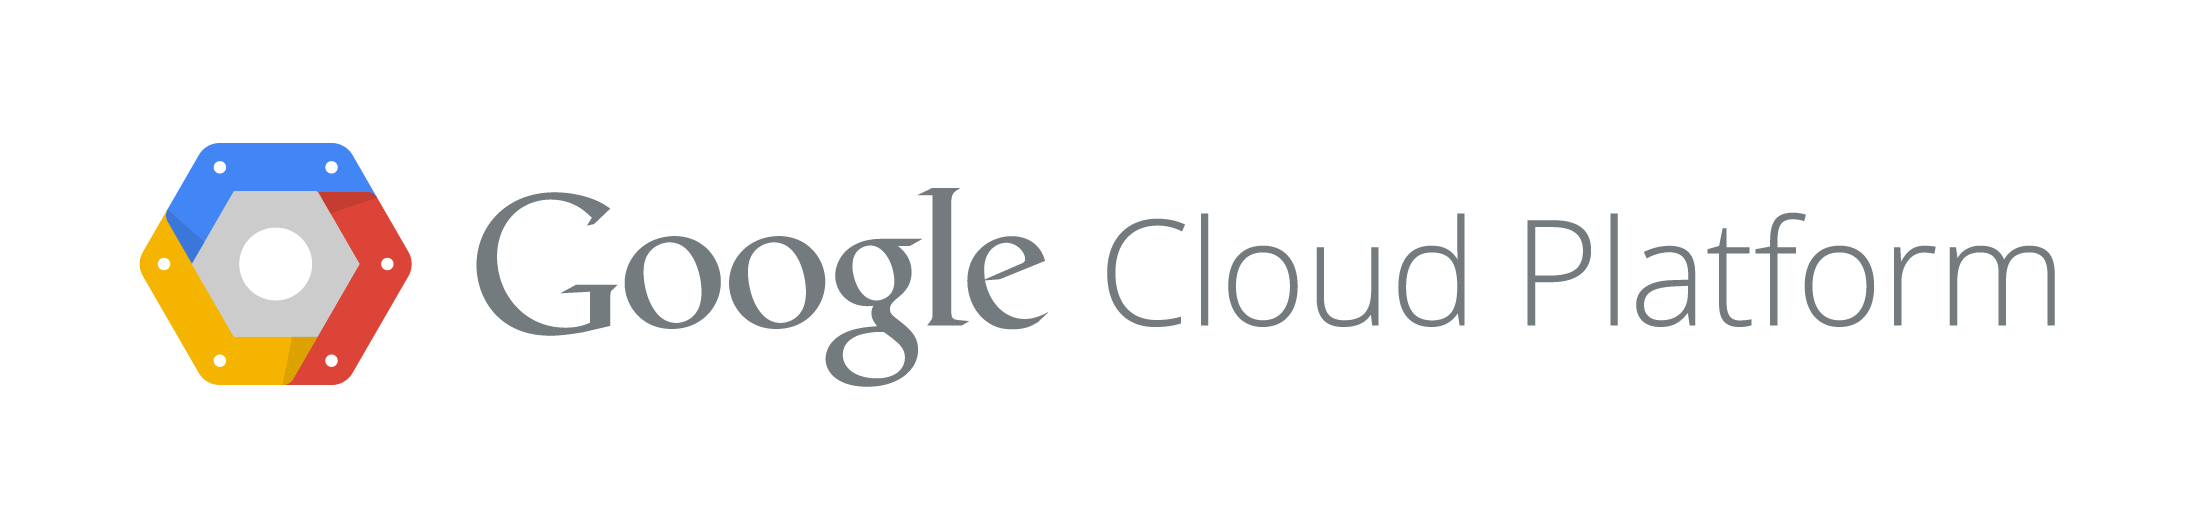 Google Cloud Platform en América Latina